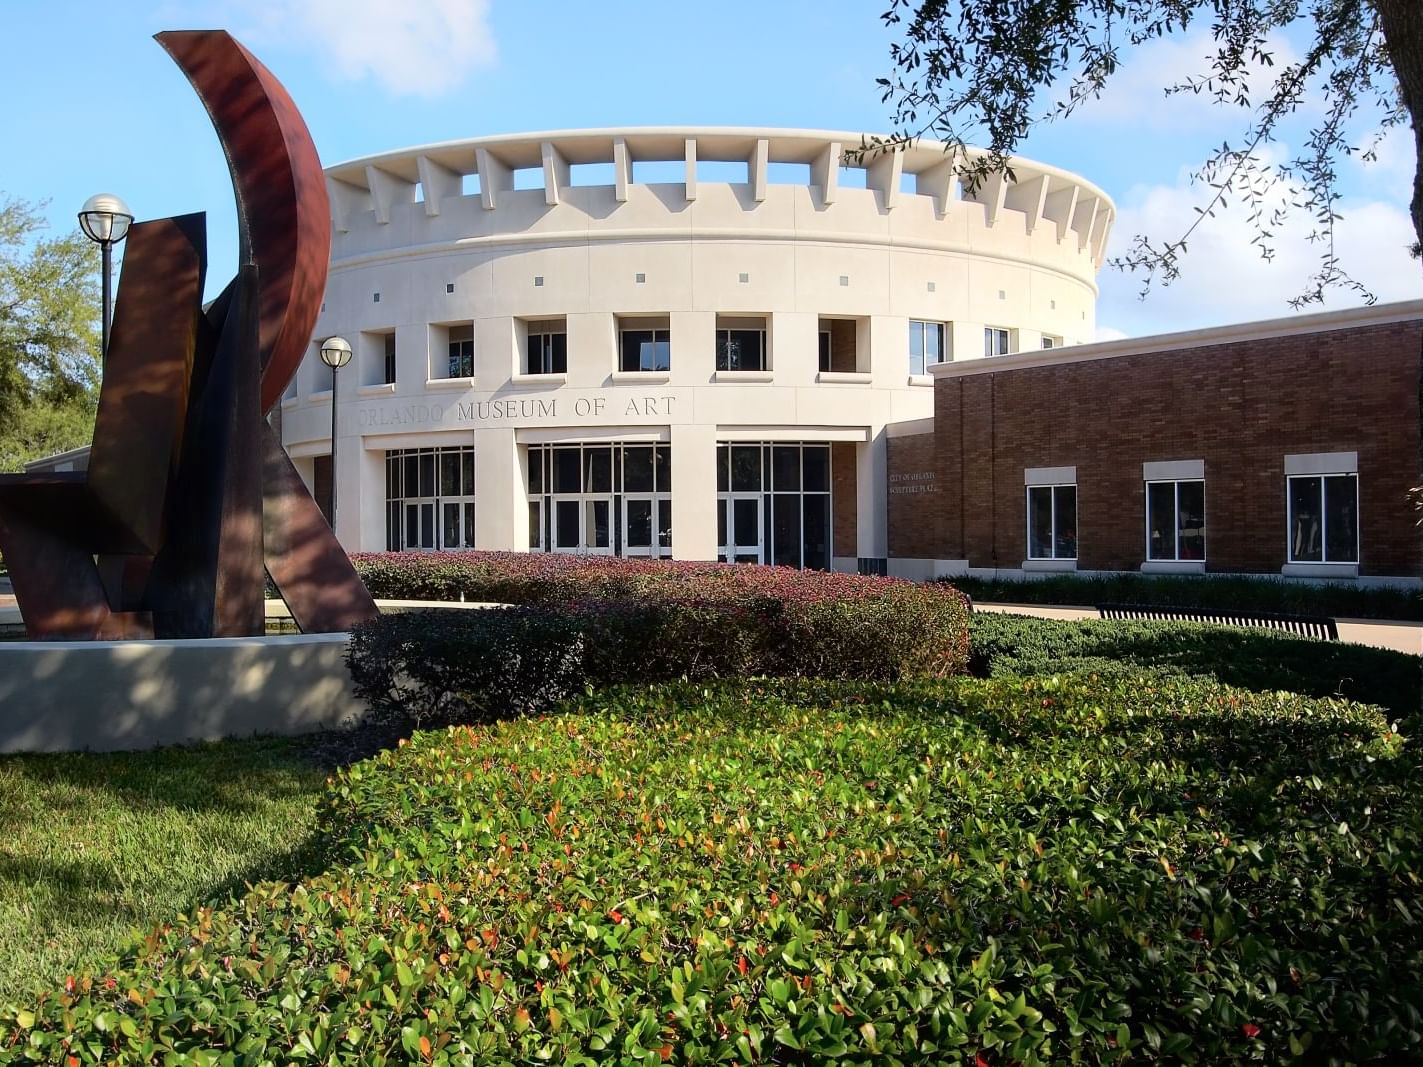 The Orlando arts scene includes the Orlando Museum of Art